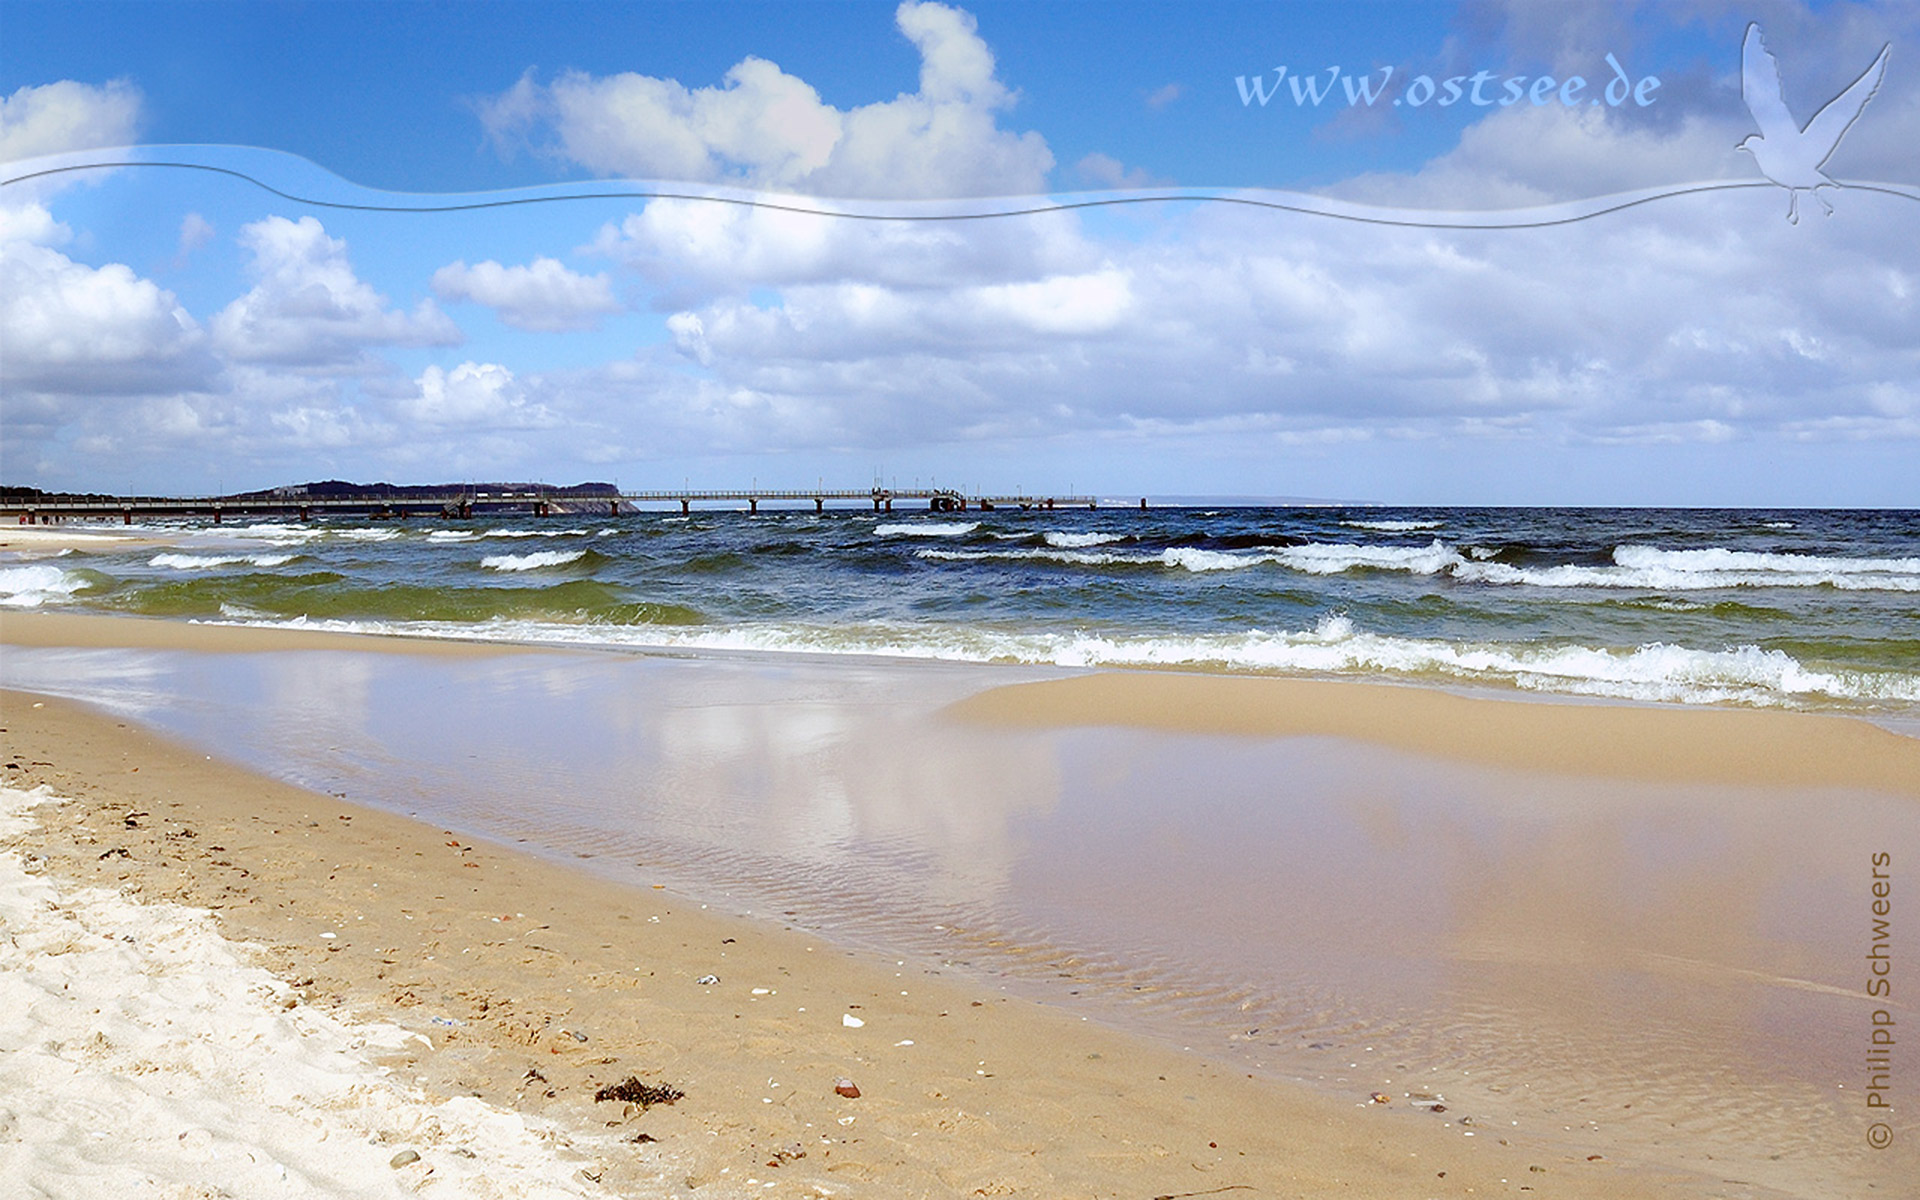 Hintergrundbild: Strand und Seebrücke an der Ostsee